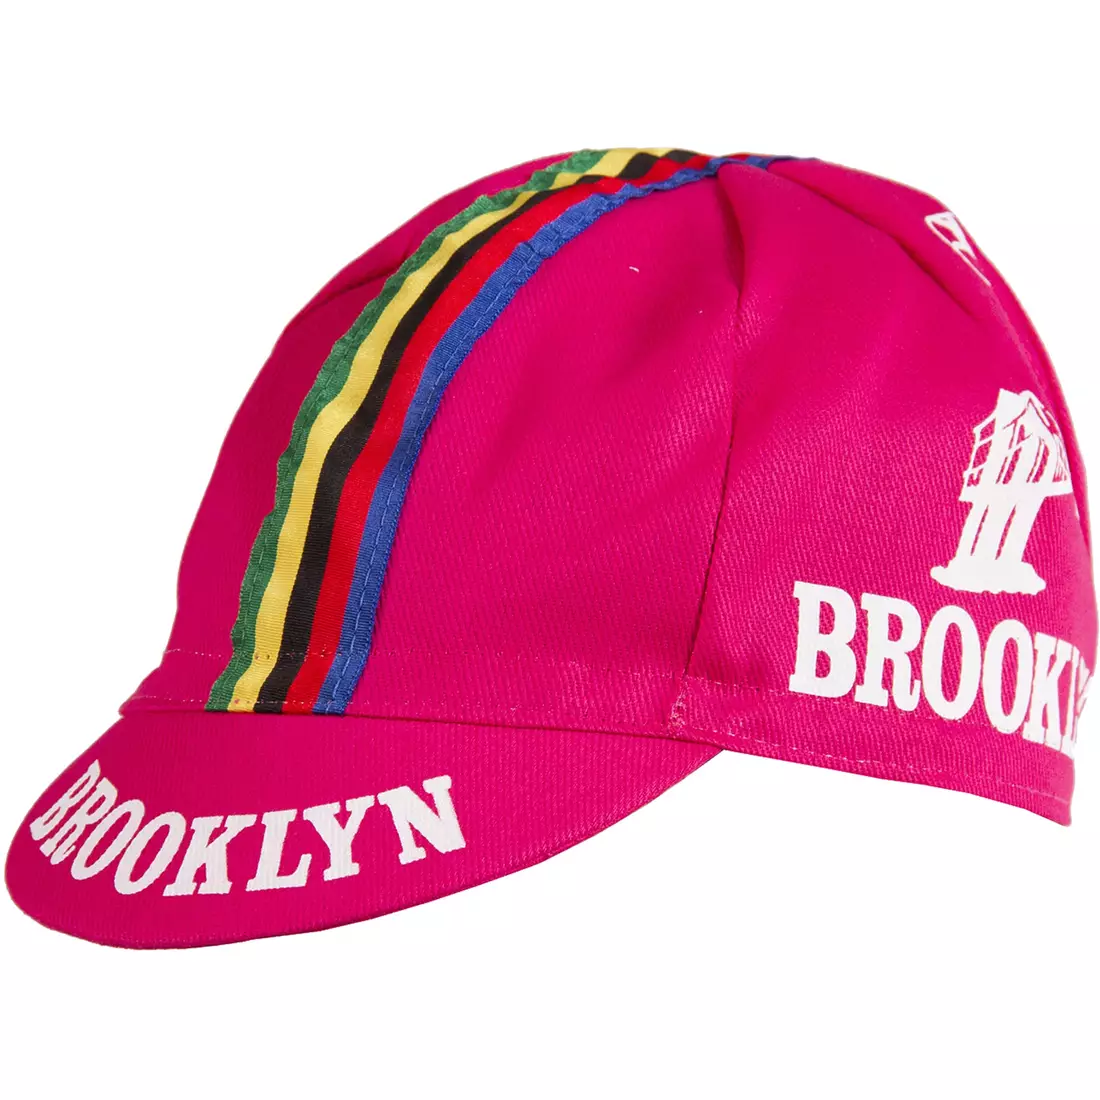 Cyklistická čiapka GIORDANA SS18 - Brooklyn - ružová s pásikom GI-S6-COCA-BROK-PINK jedna veľ.